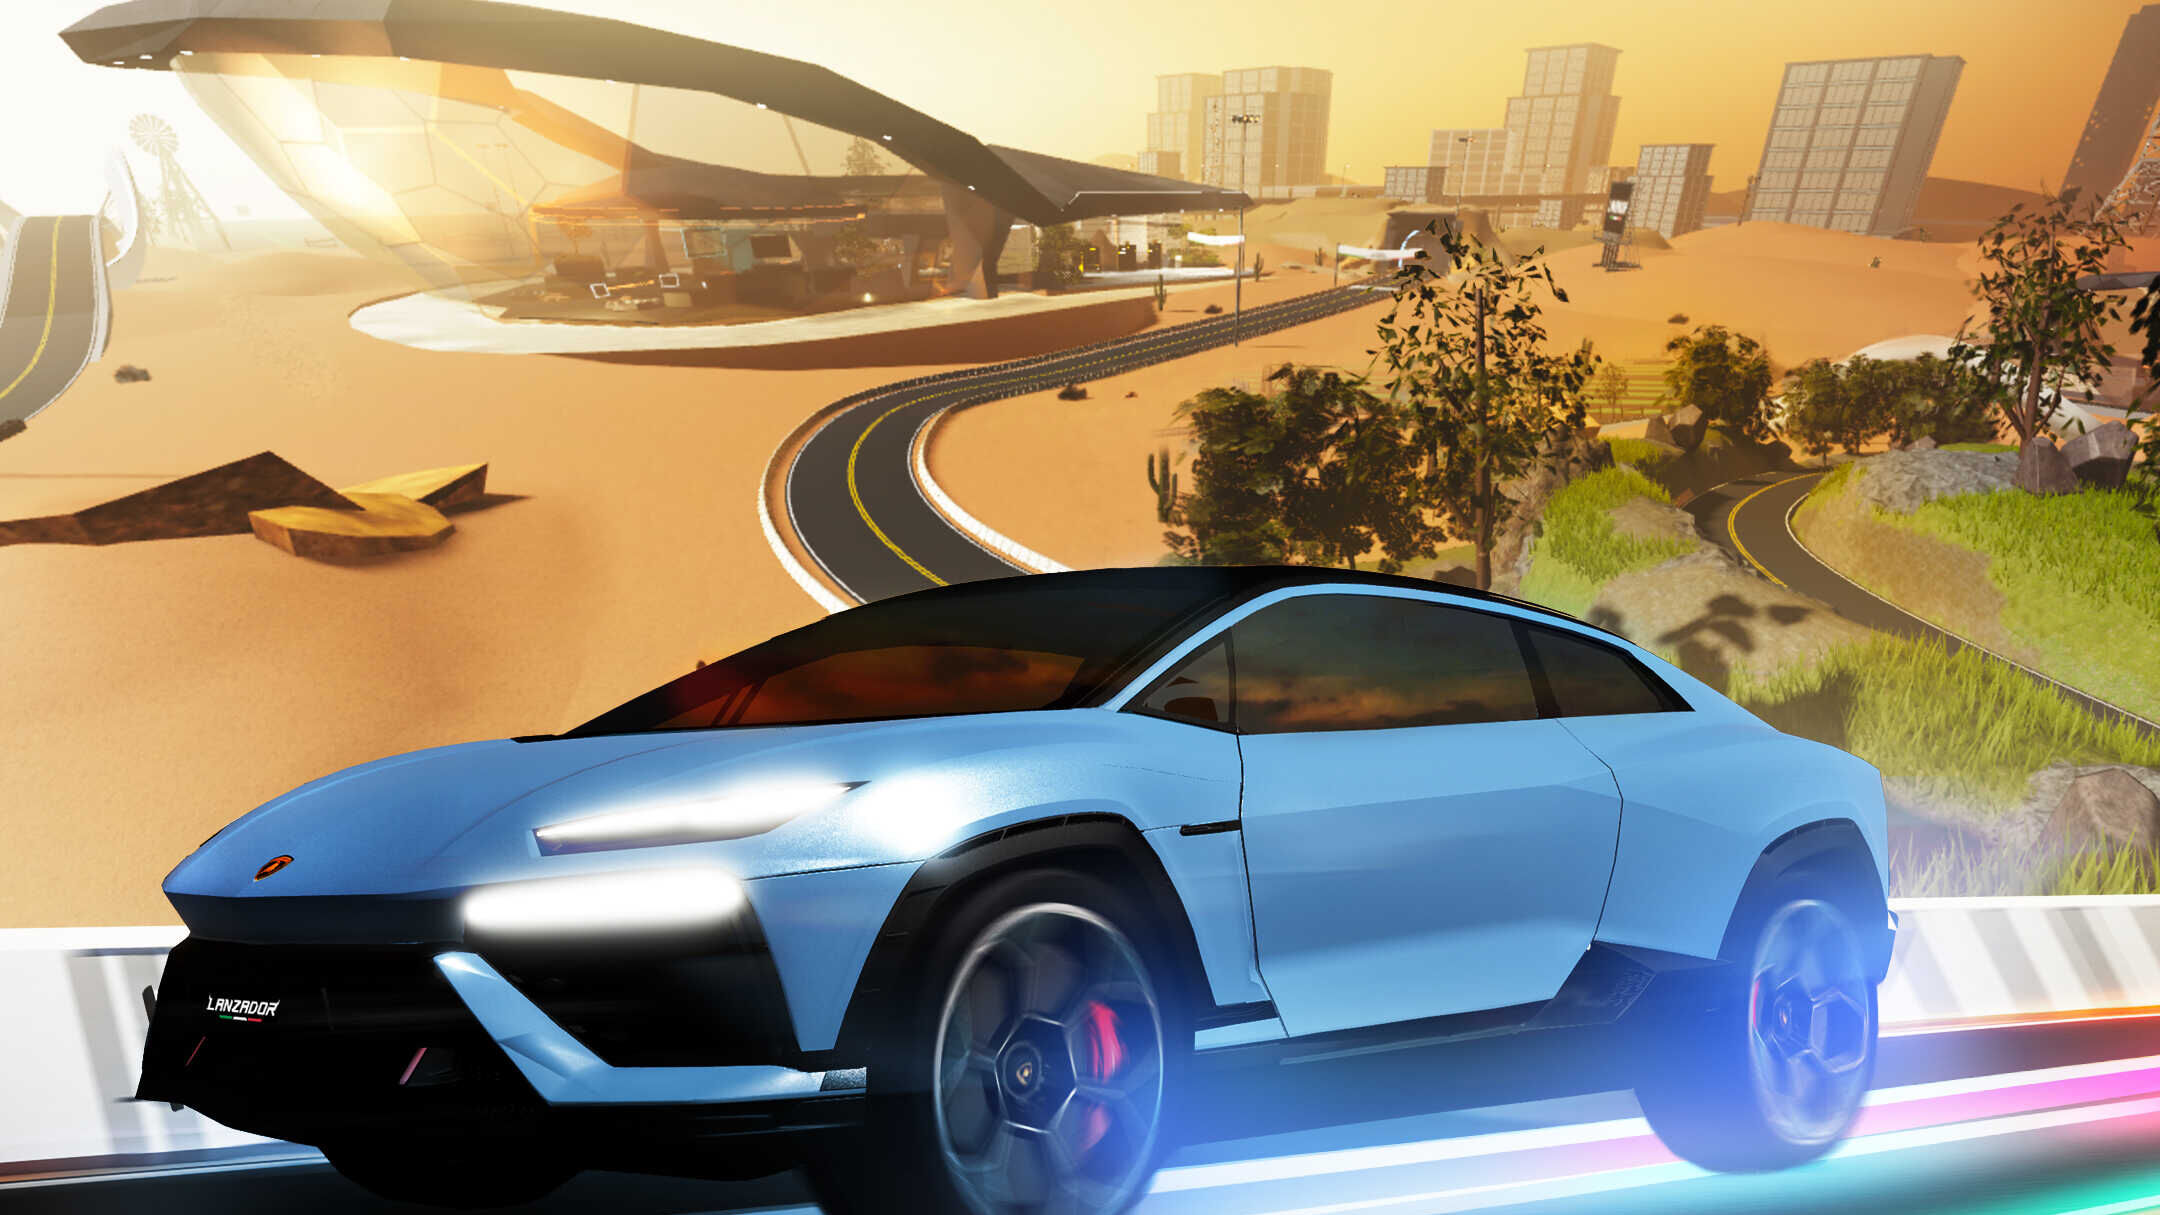 Lanzador. Automobili Lamborghini-ի էլեկտրական սուպերքարը գտնվում է Roblox-ում՝ 3D սուզվող հարթակում